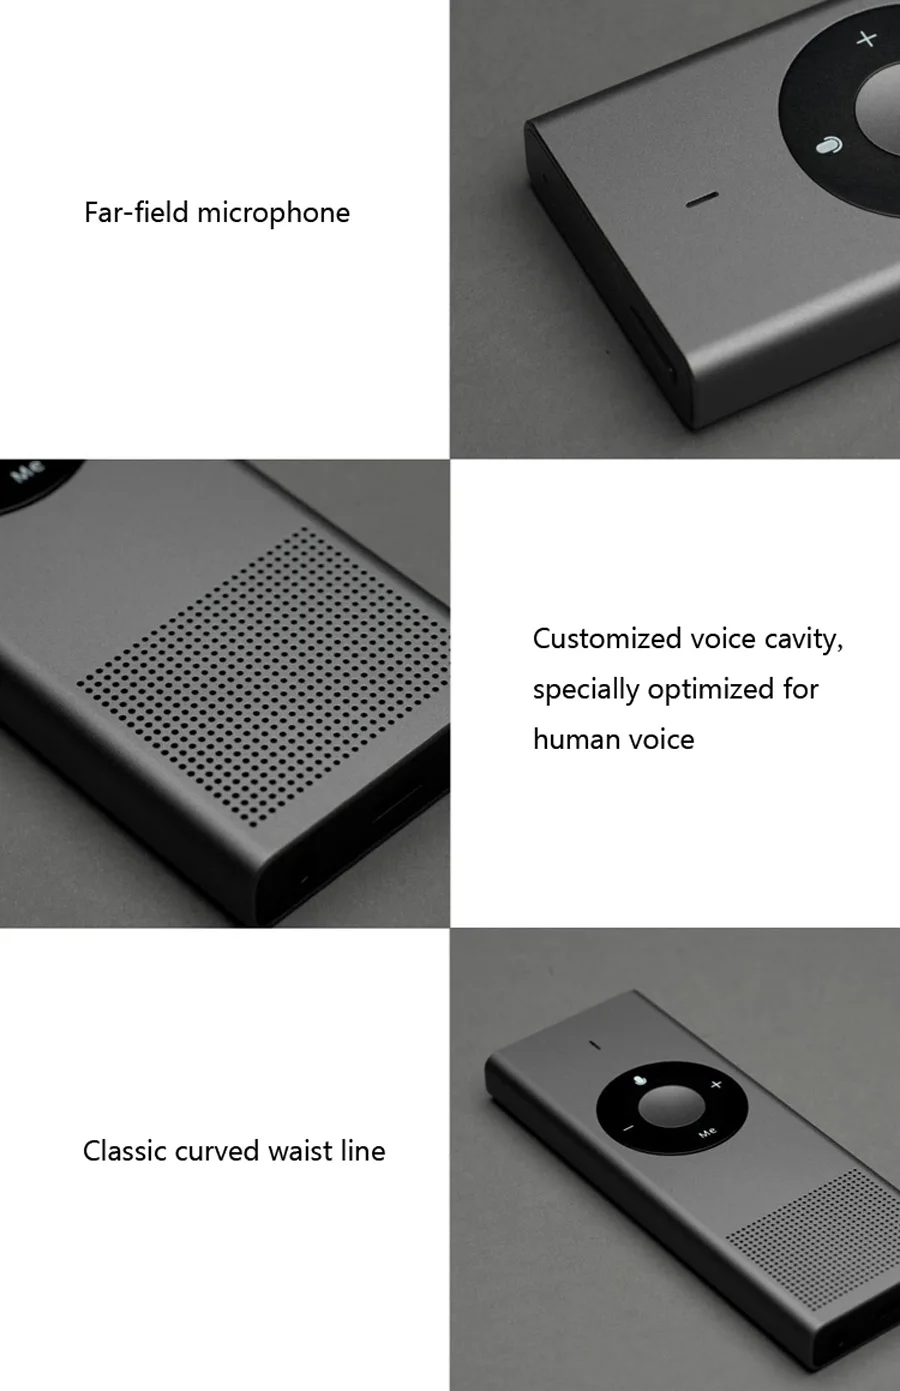 Xiaomi Mijia Konjak AI голосовой переводчик 14 lauguage 7 дней в режиме ожидания 8H непрерывный перевод 900 мАч батарея Smart